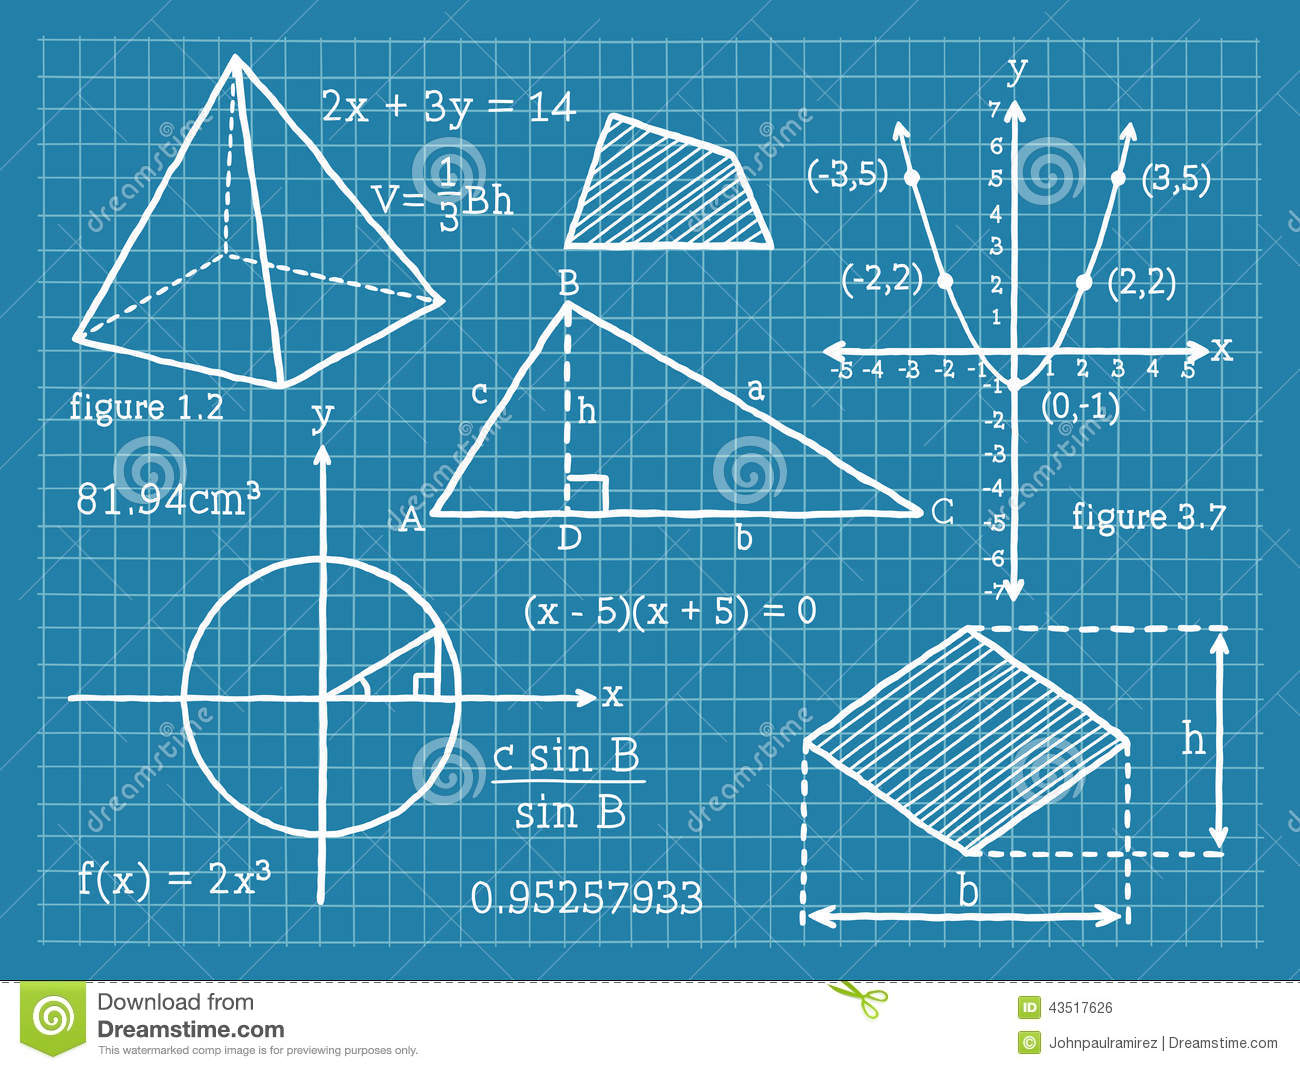 La Geometria En Las Matematicas 2449